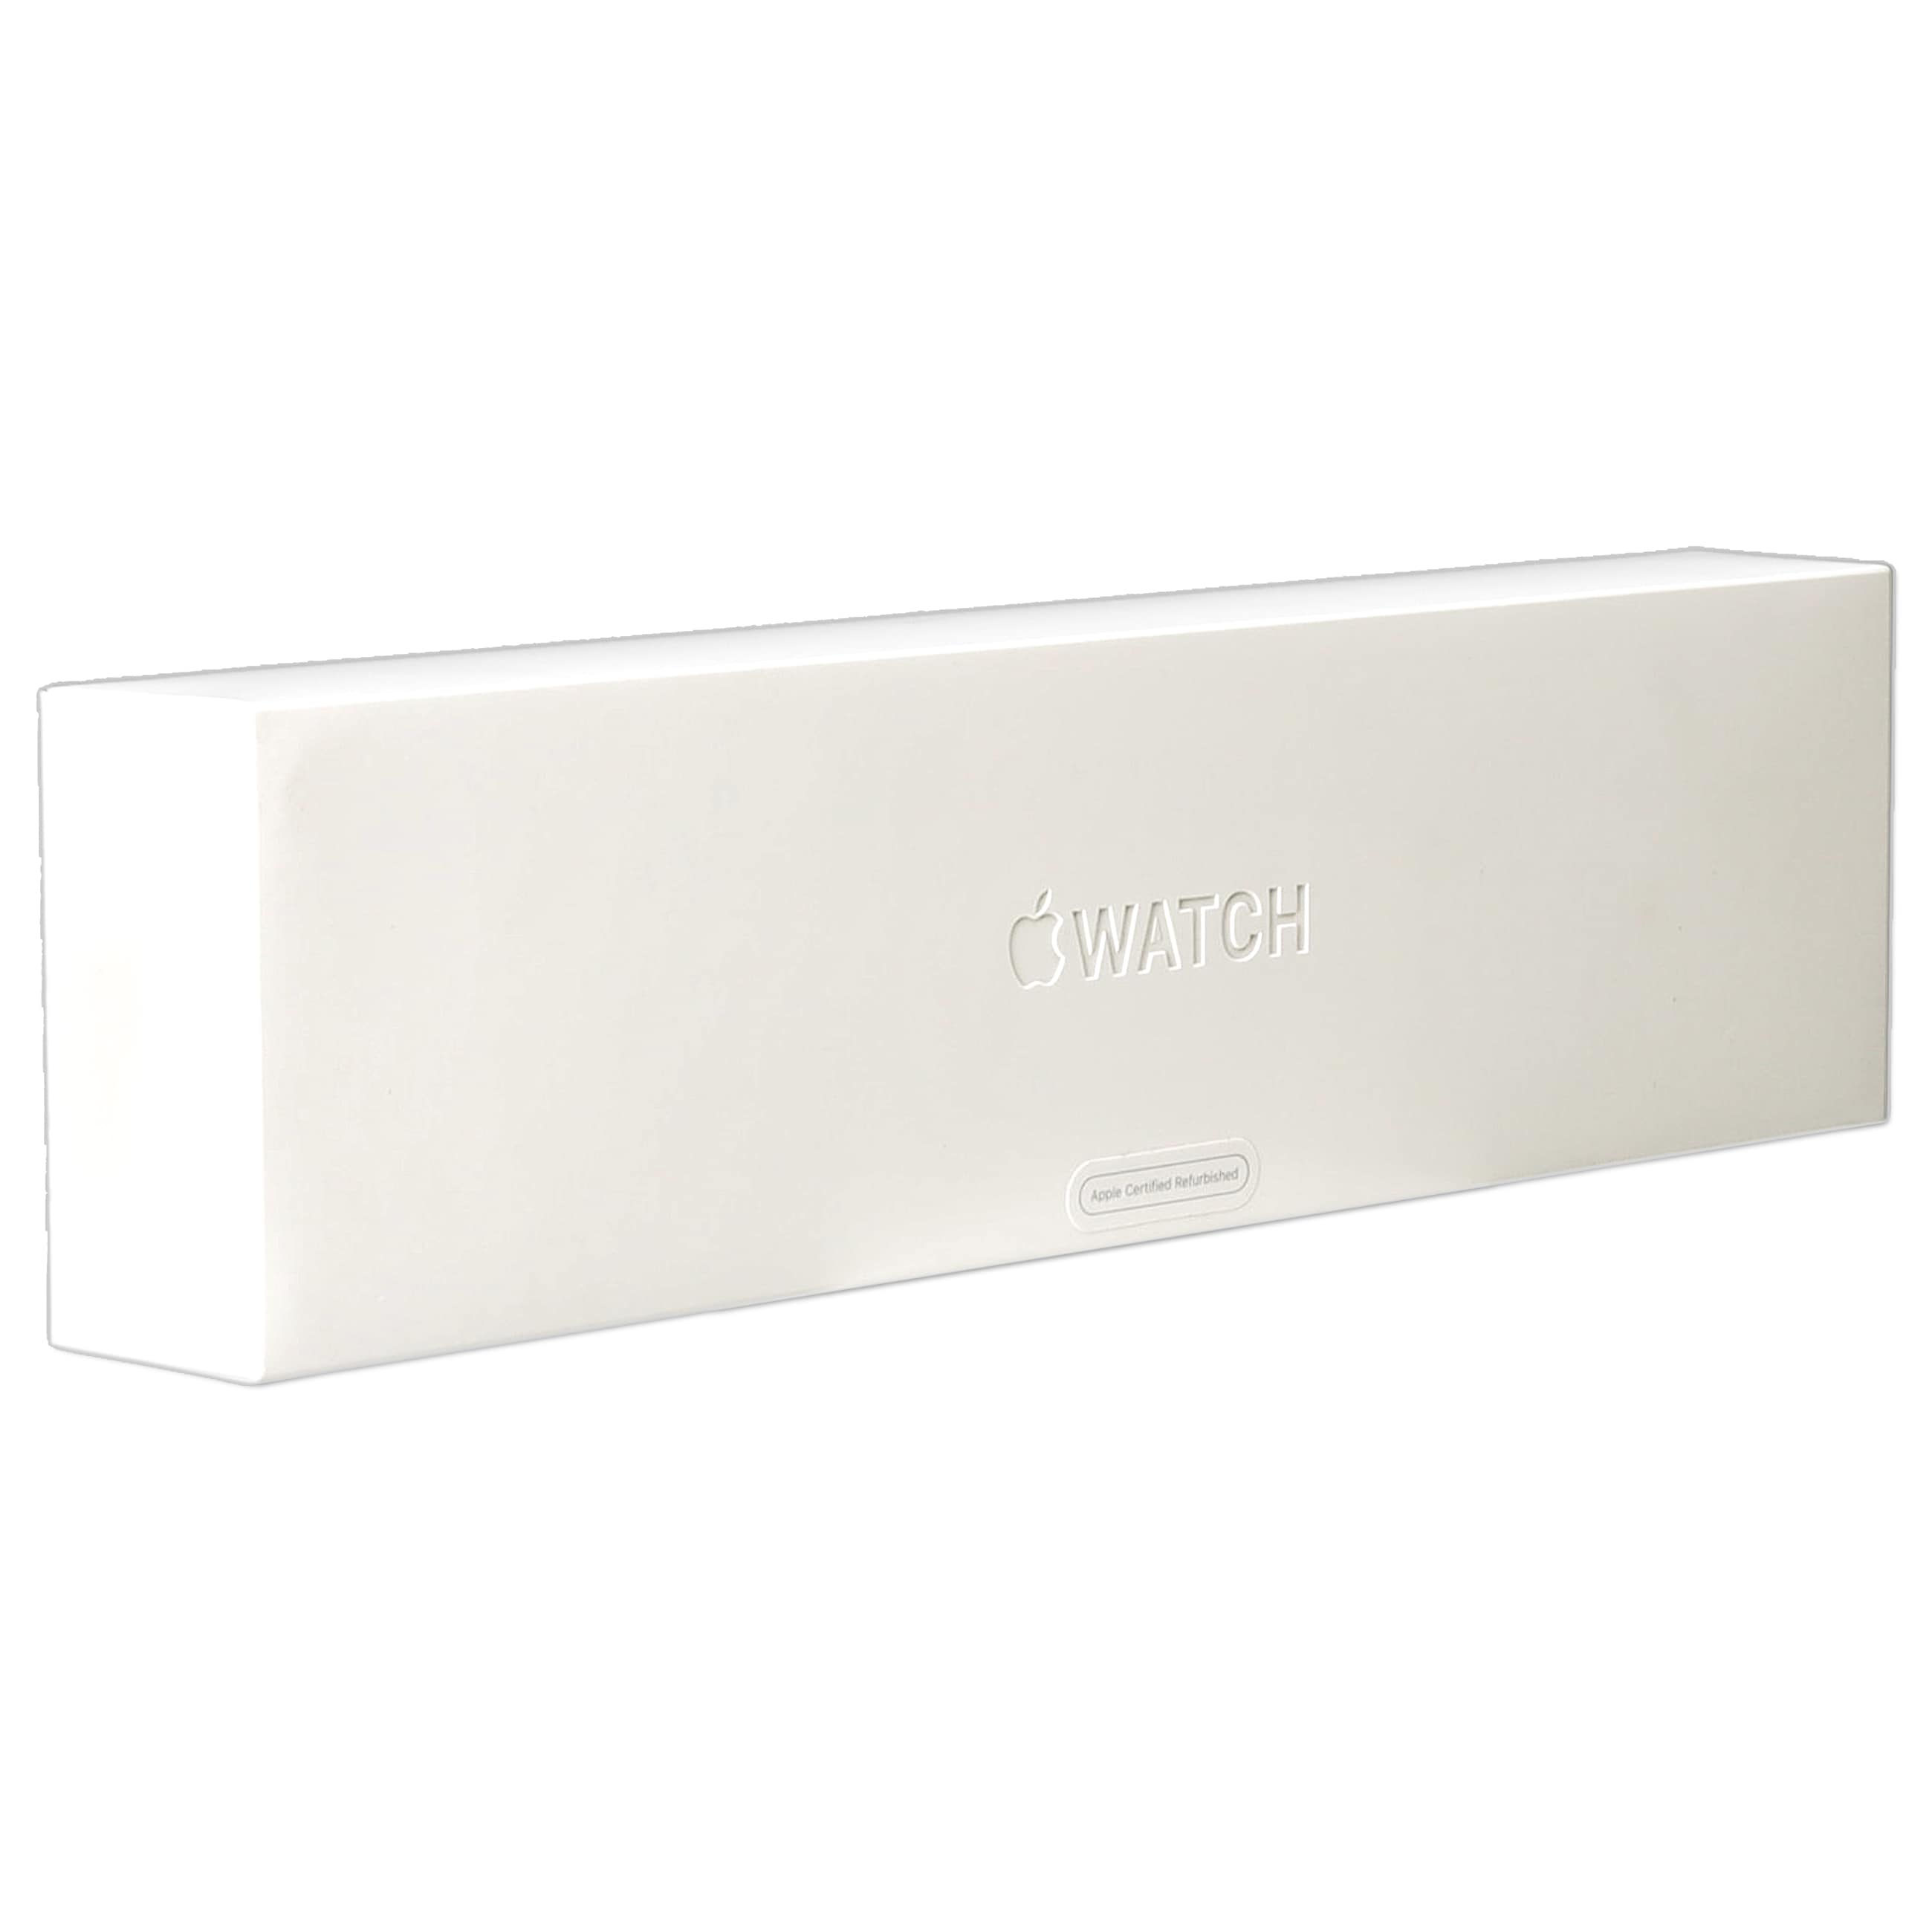 Apple Watch Series 6 LTE (GPS) - SmartwatchOVP geöffnet - geöffnet